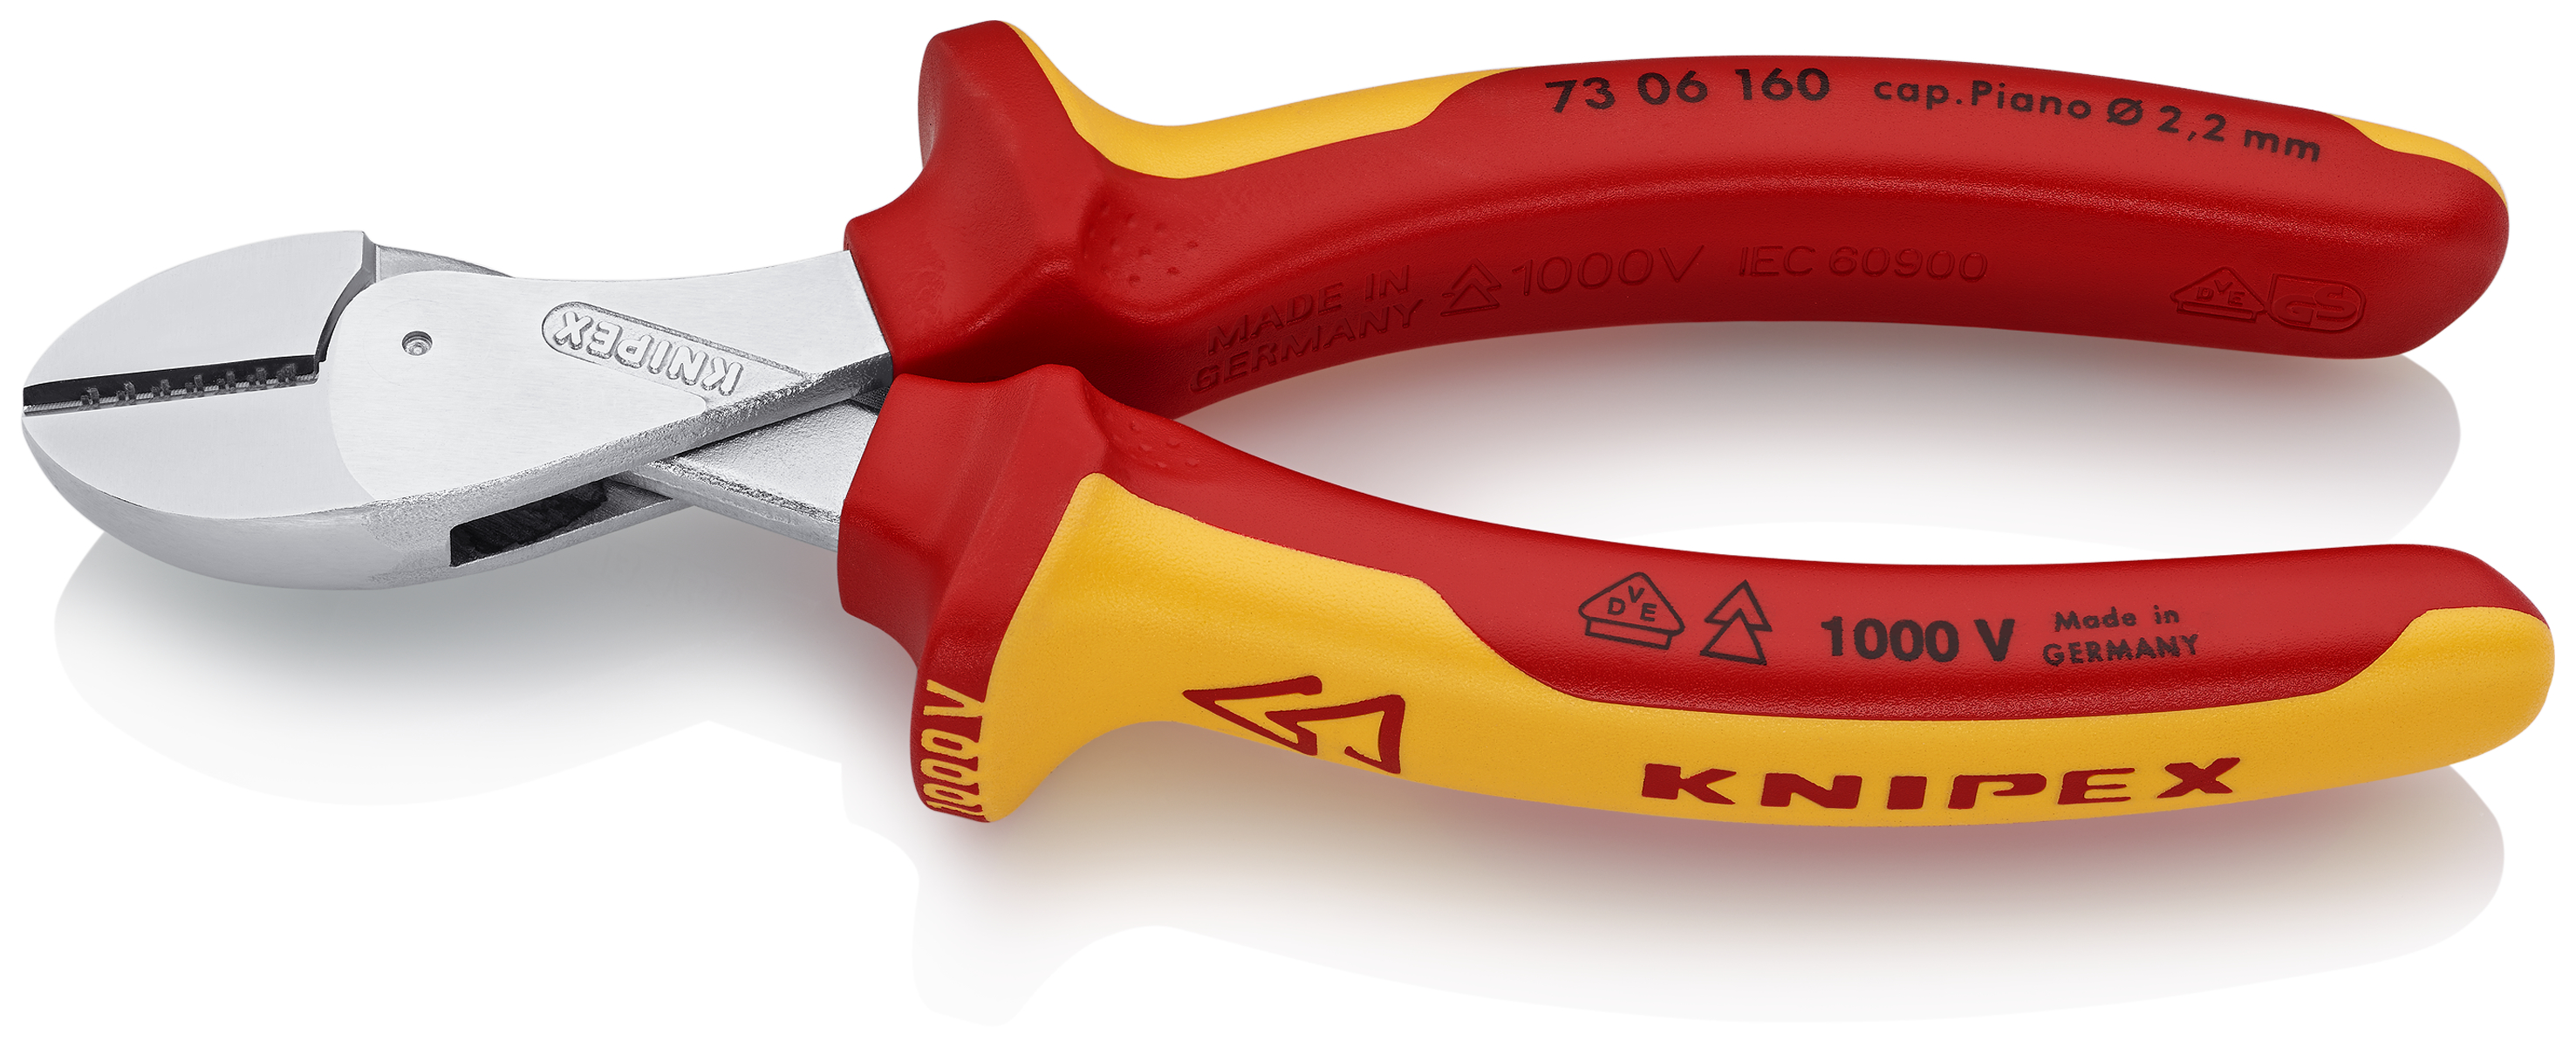 KNIPEX 73 06 Garten mm X-Cut® 160 / | hochübersetzt Werkzeug für CBdirekt / Sanitär Profi-Shop 160 Kompakt-Seitenschneider